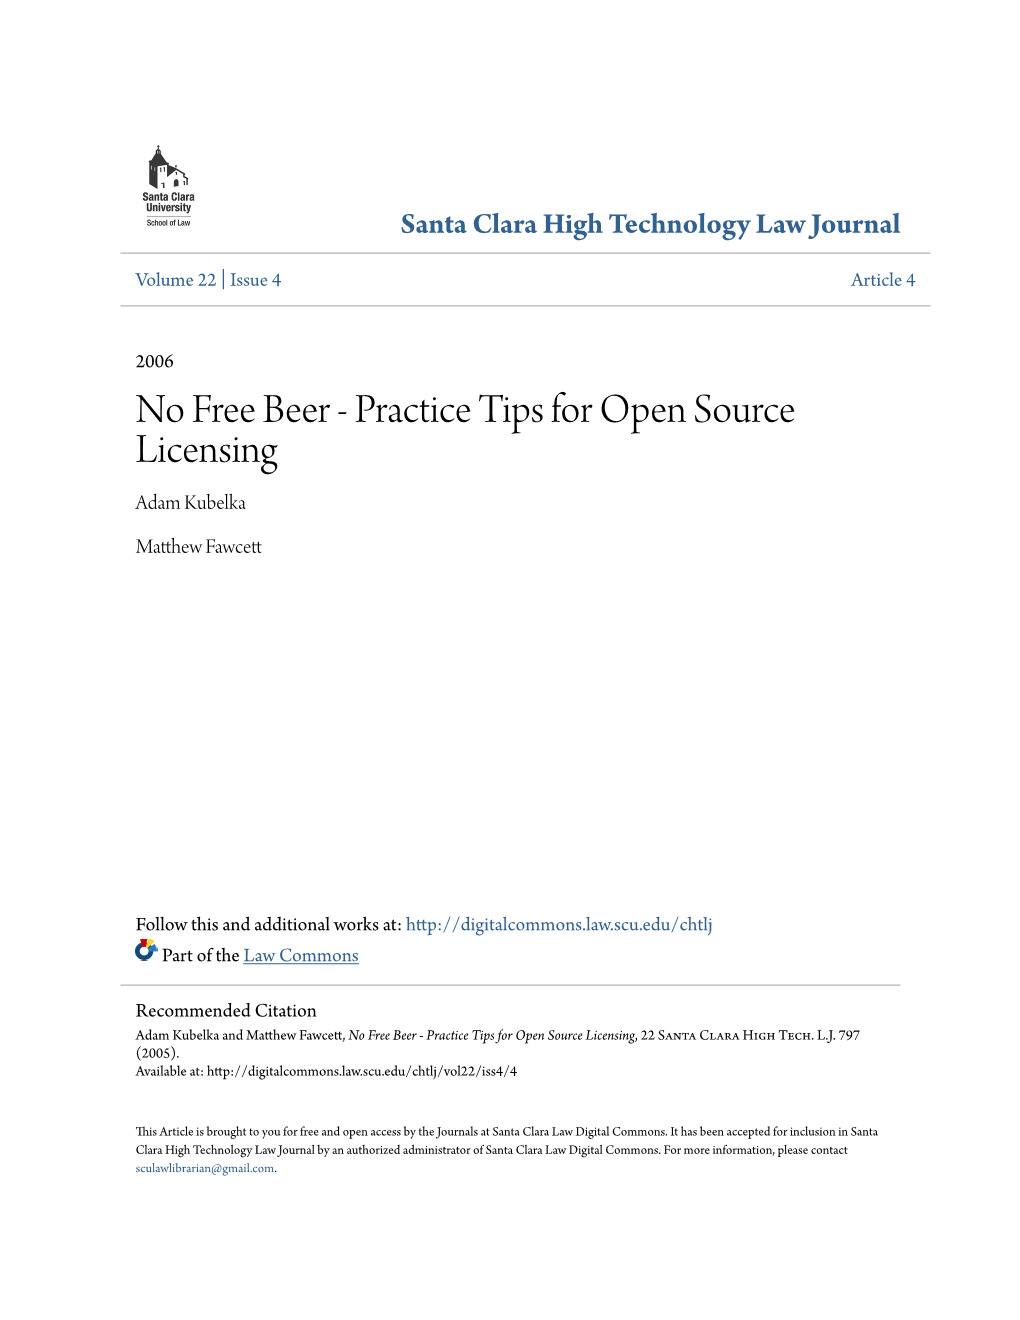 Practice Tips for Open Source Licensing Adam Kubelka